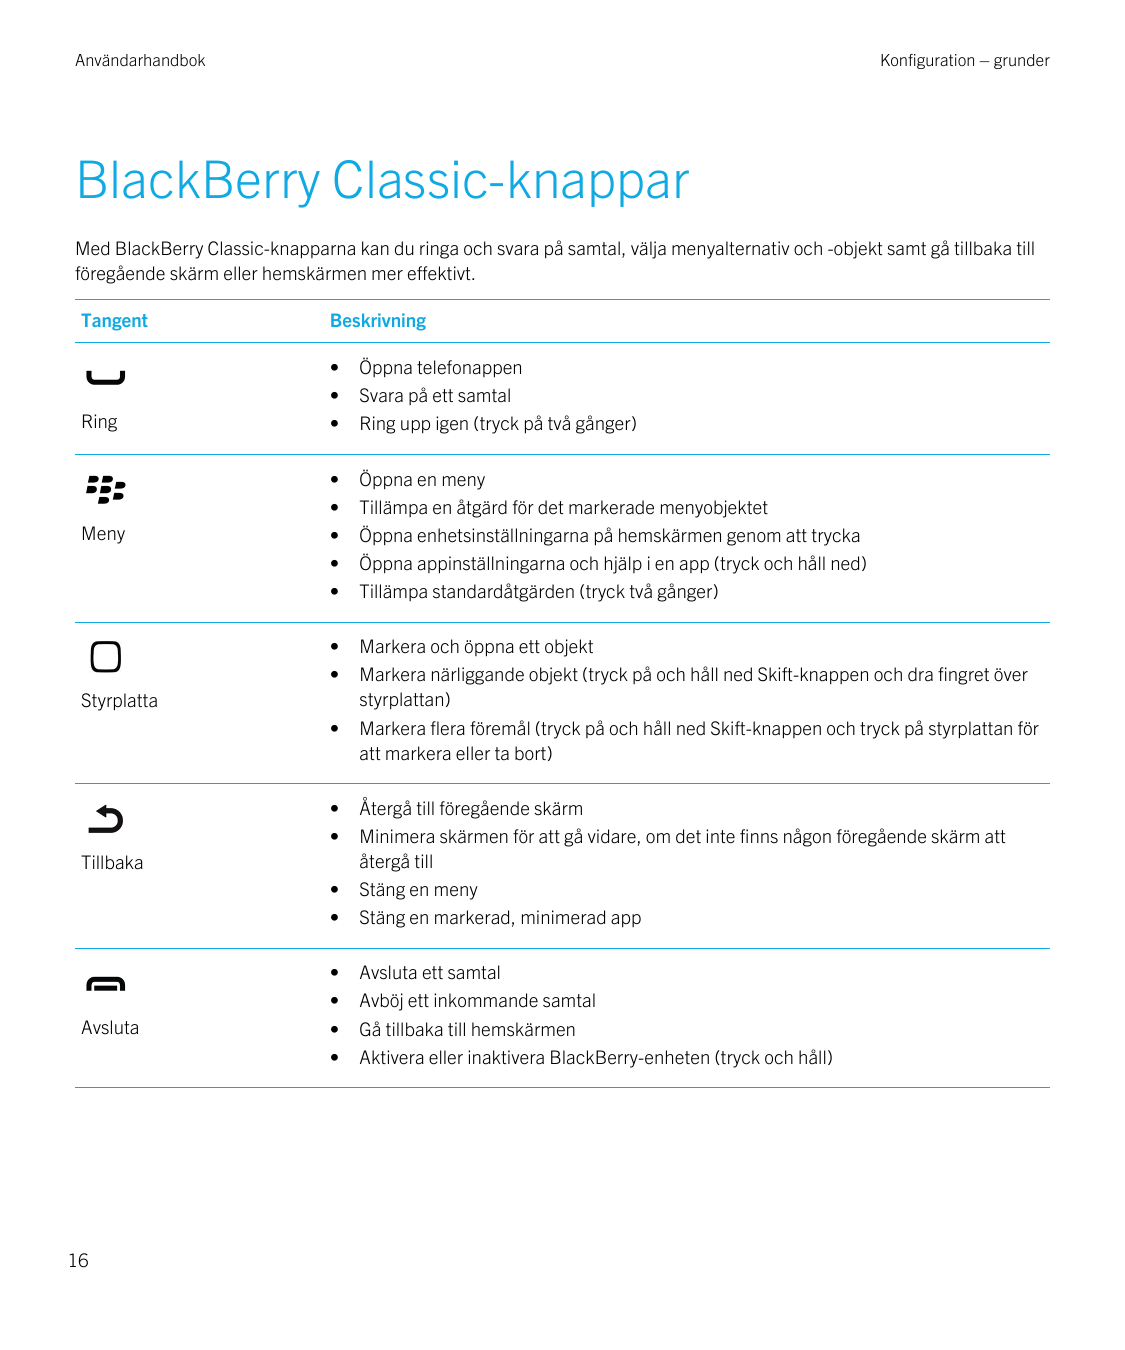 AnvändarhandbokKonfiguration – grunderBlackBerry Classic-knapparMed BlackBerry Classic-knapparna kan du ringa och svara på samta